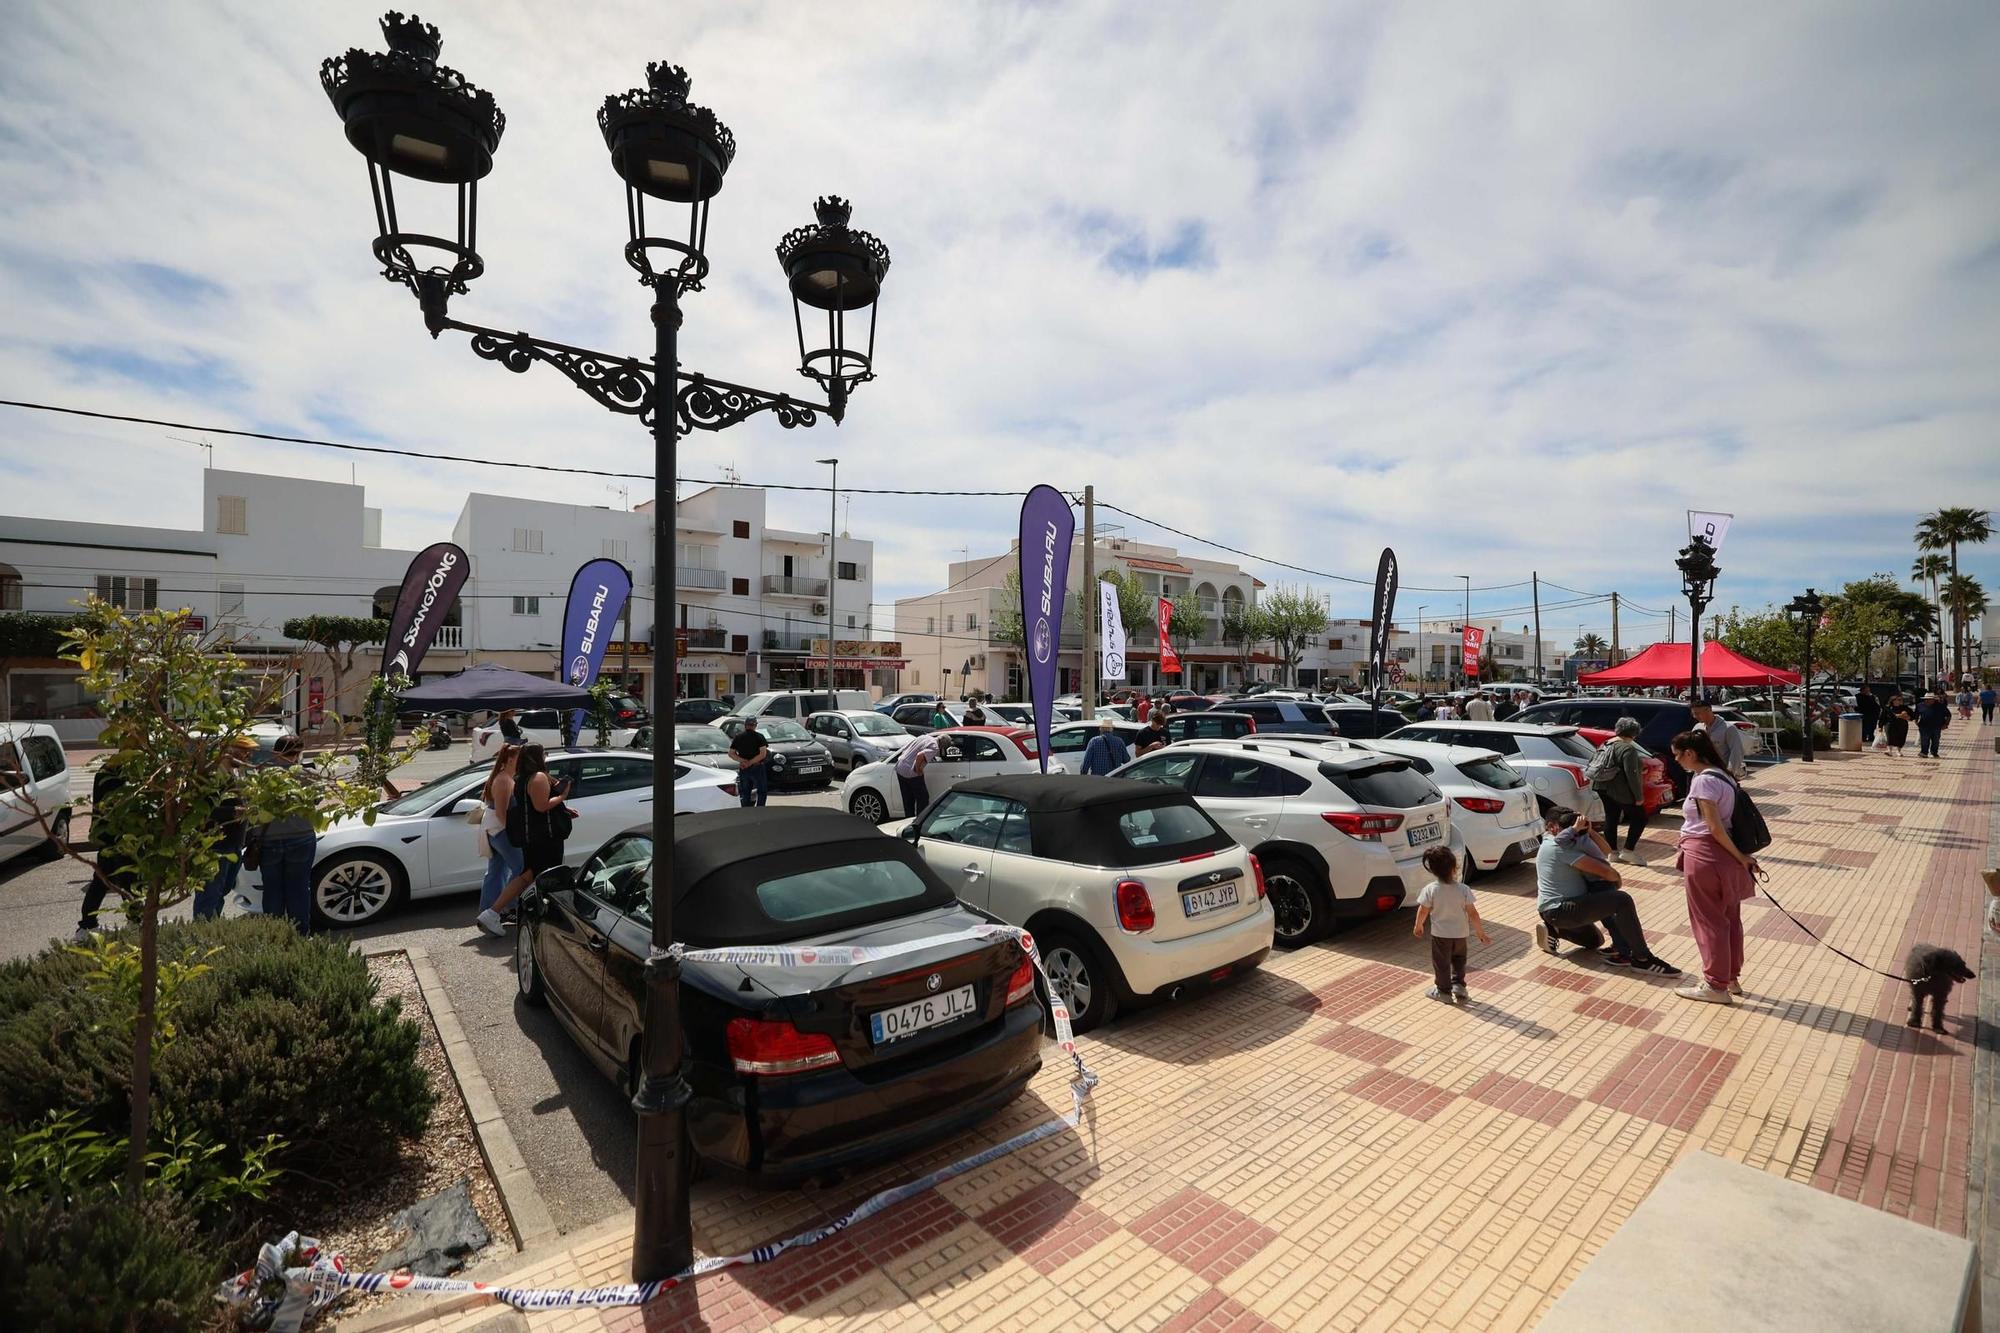 Galería: Feria del vehículo de ocasión en Sant Jordi